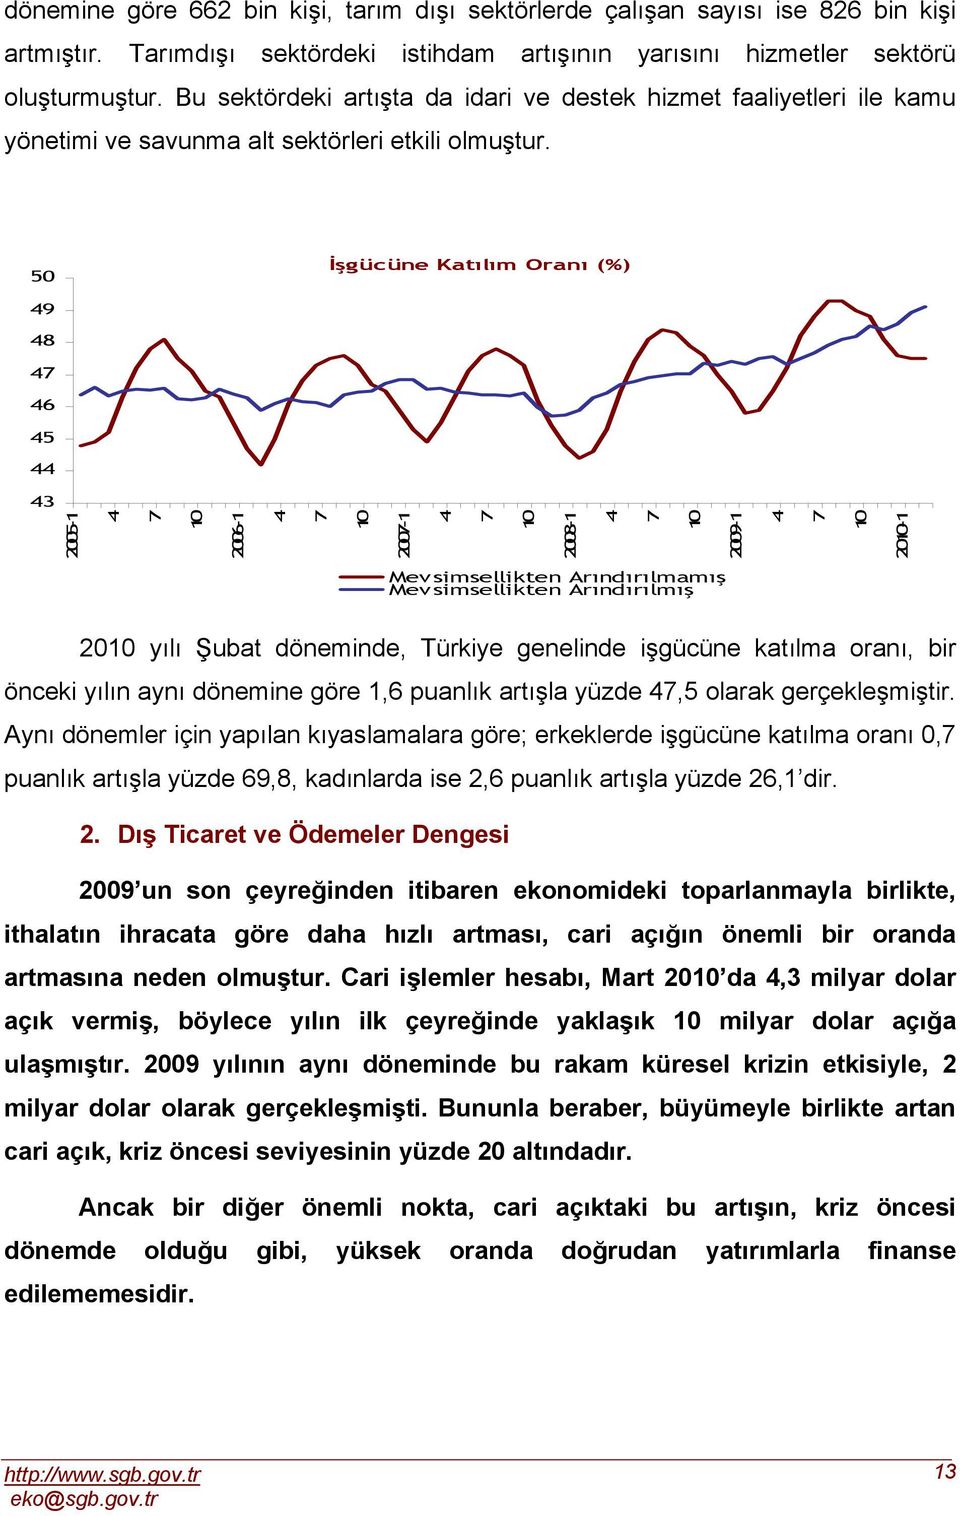 0 İşgücüne Katılım Oranı (%) 8 00-1 00-1 00-1 008-1 00-1 0-1 Mevsimsellikten Arındırılmamış Mevsimsellikten Arındırılmış 0 yılı Şubat döneminde, Türkiye genelinde işgücüne katılma oranı, bir önceki